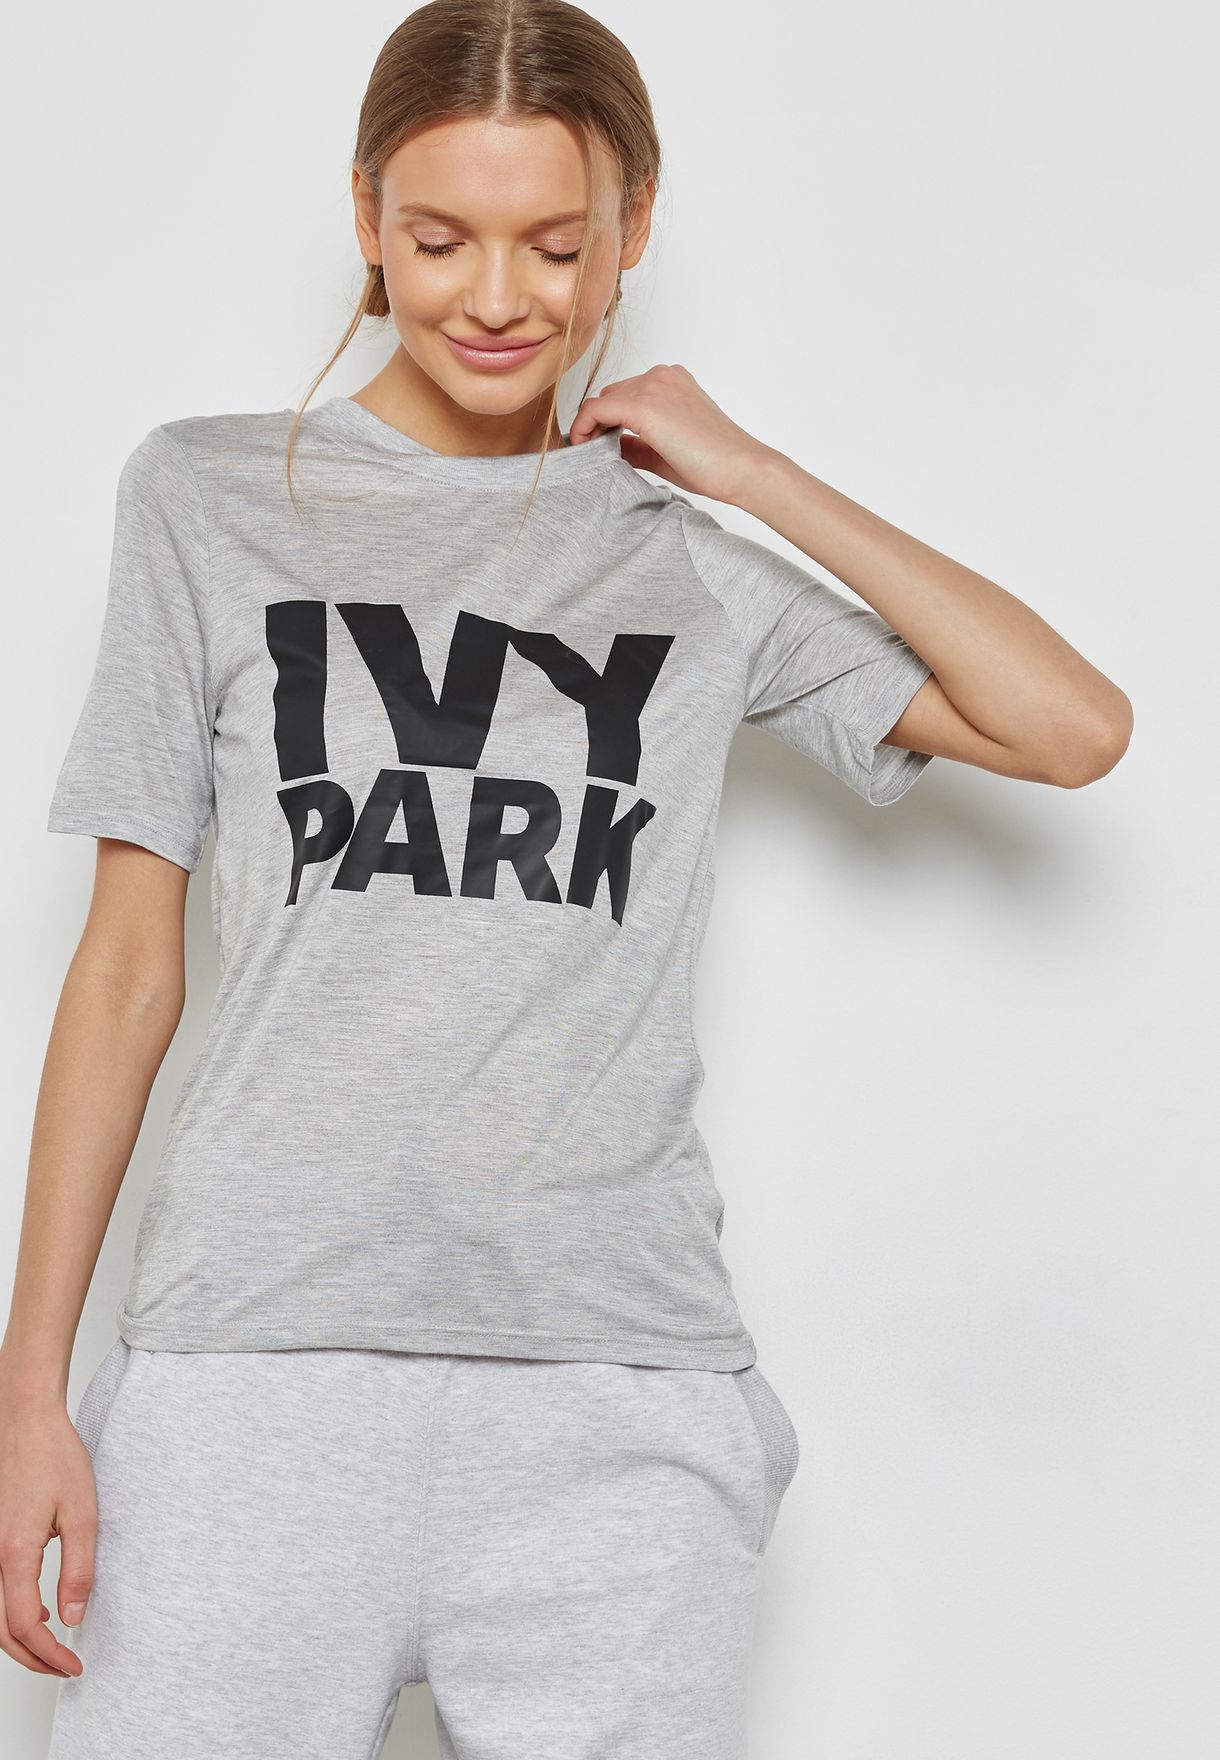 ivy park shirt